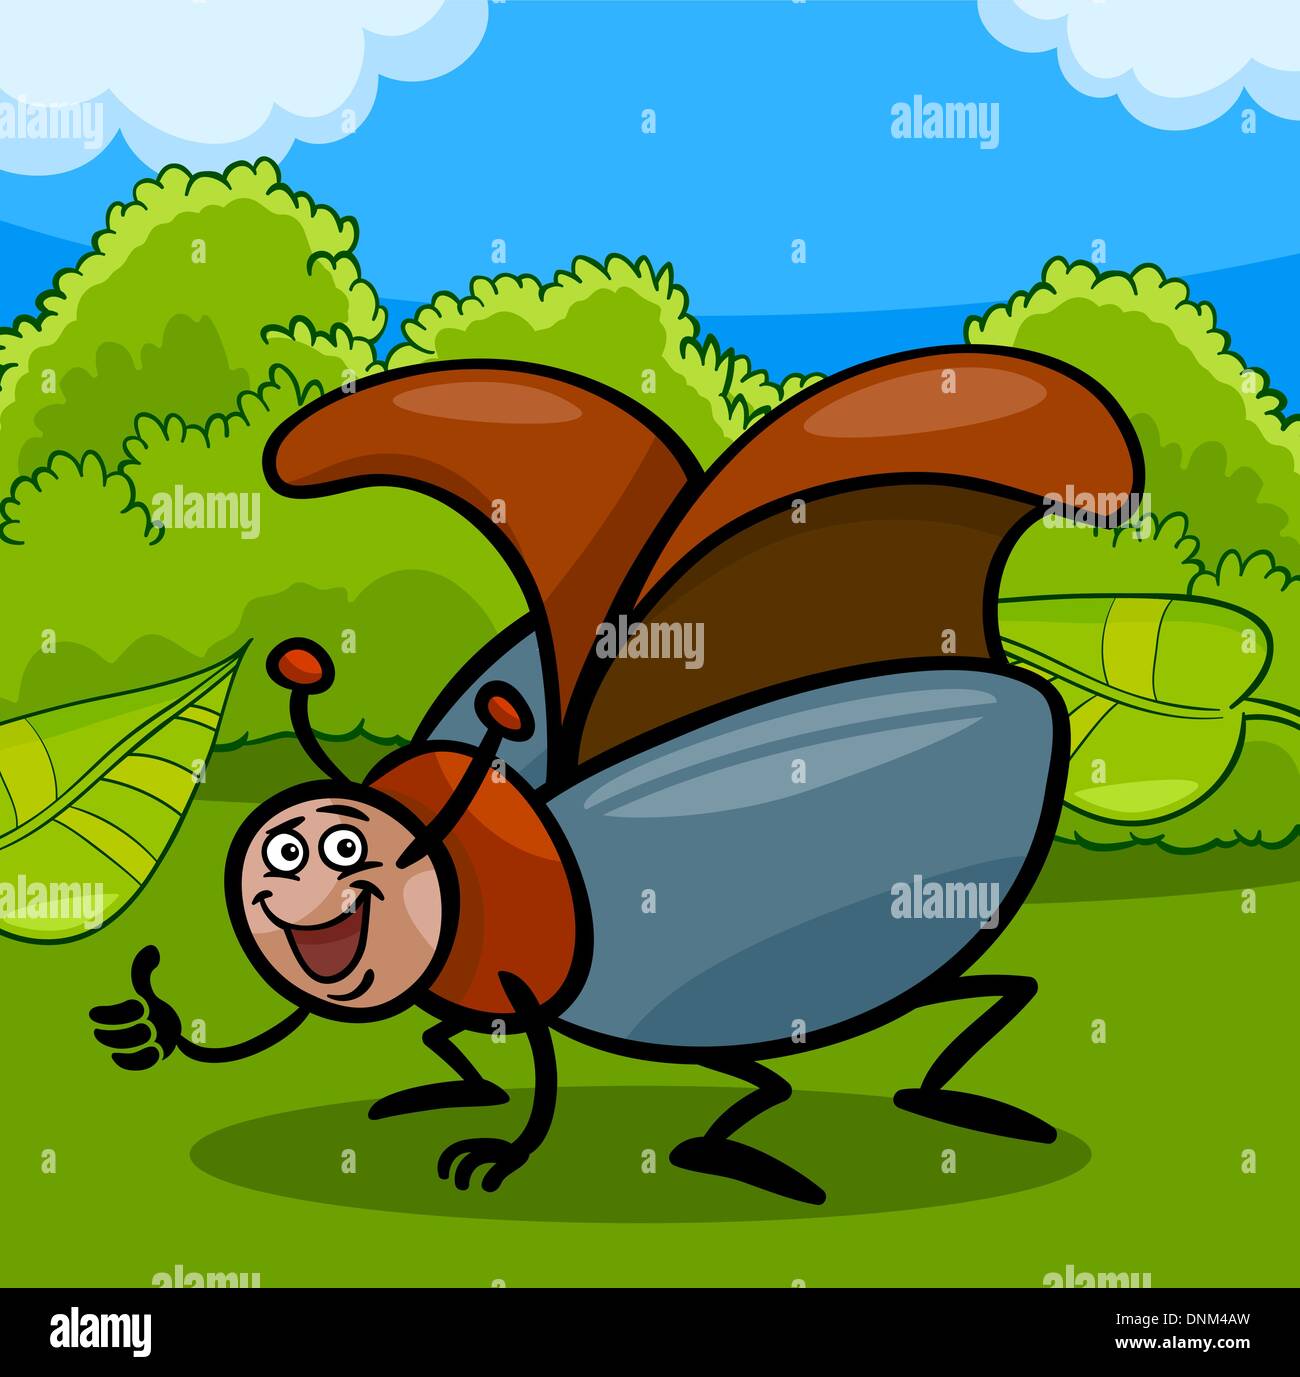 Cartoon-Illustration der lustige Käfer oder Maikäfer Insekt auf der ...